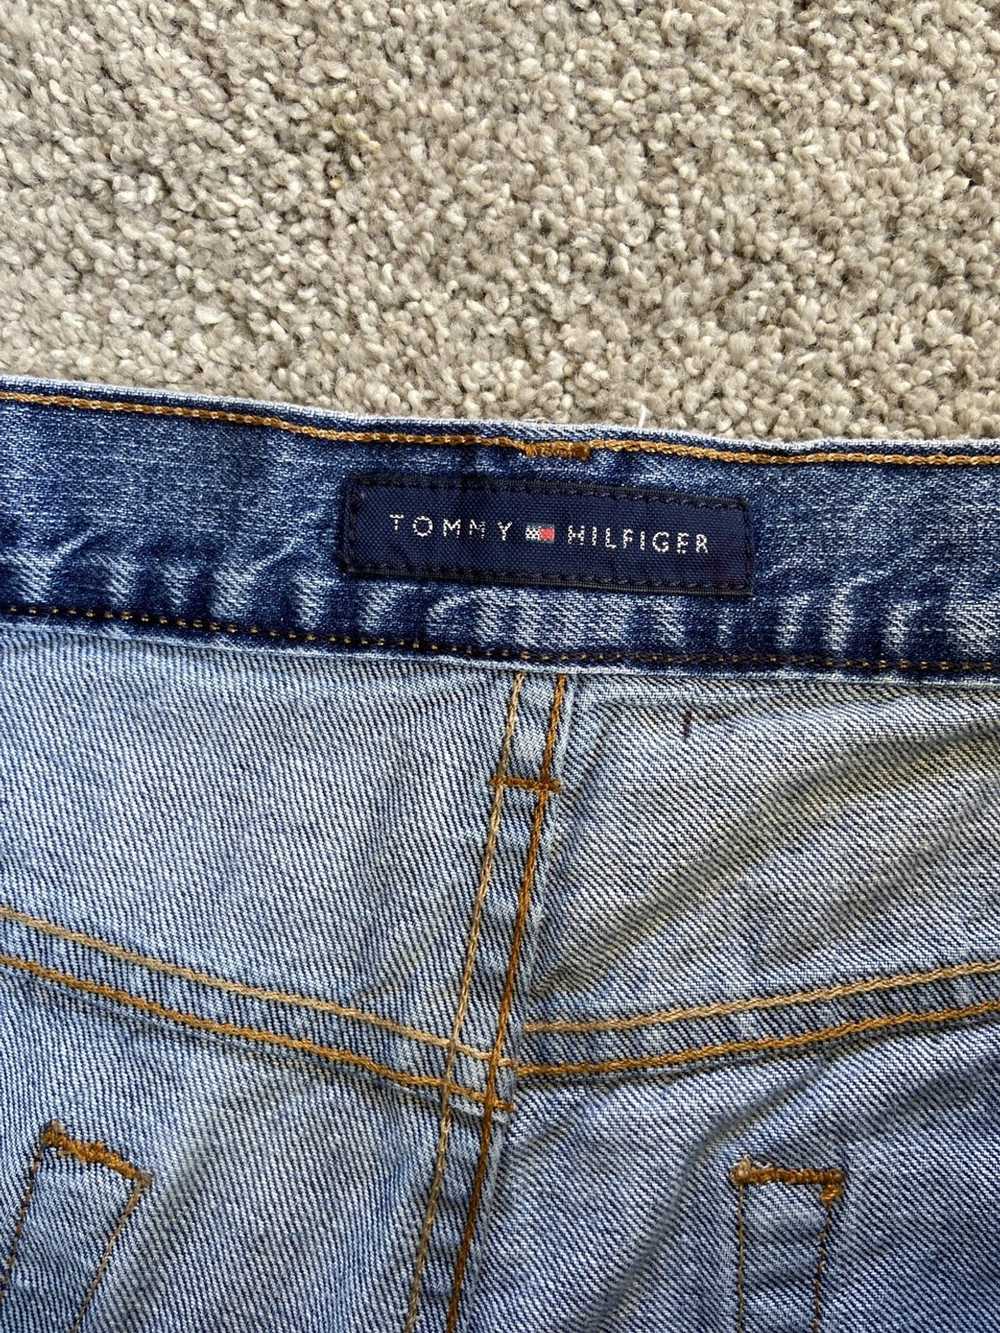 Tommy Hilfiger × Vintage Tommy Hilfiger jeans cut… - image 3